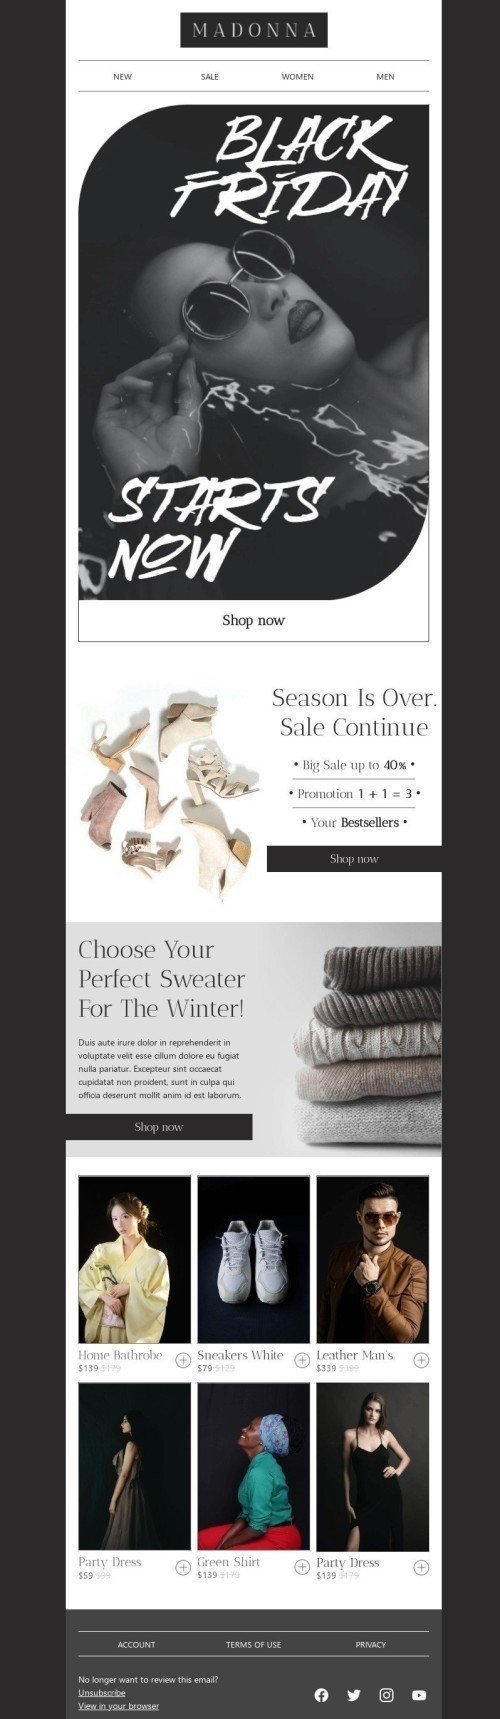 Plantilla de correo electrónico «Elige tu suéter perfecto» de Viernes Negro para la industria de Moda Vista de móvil